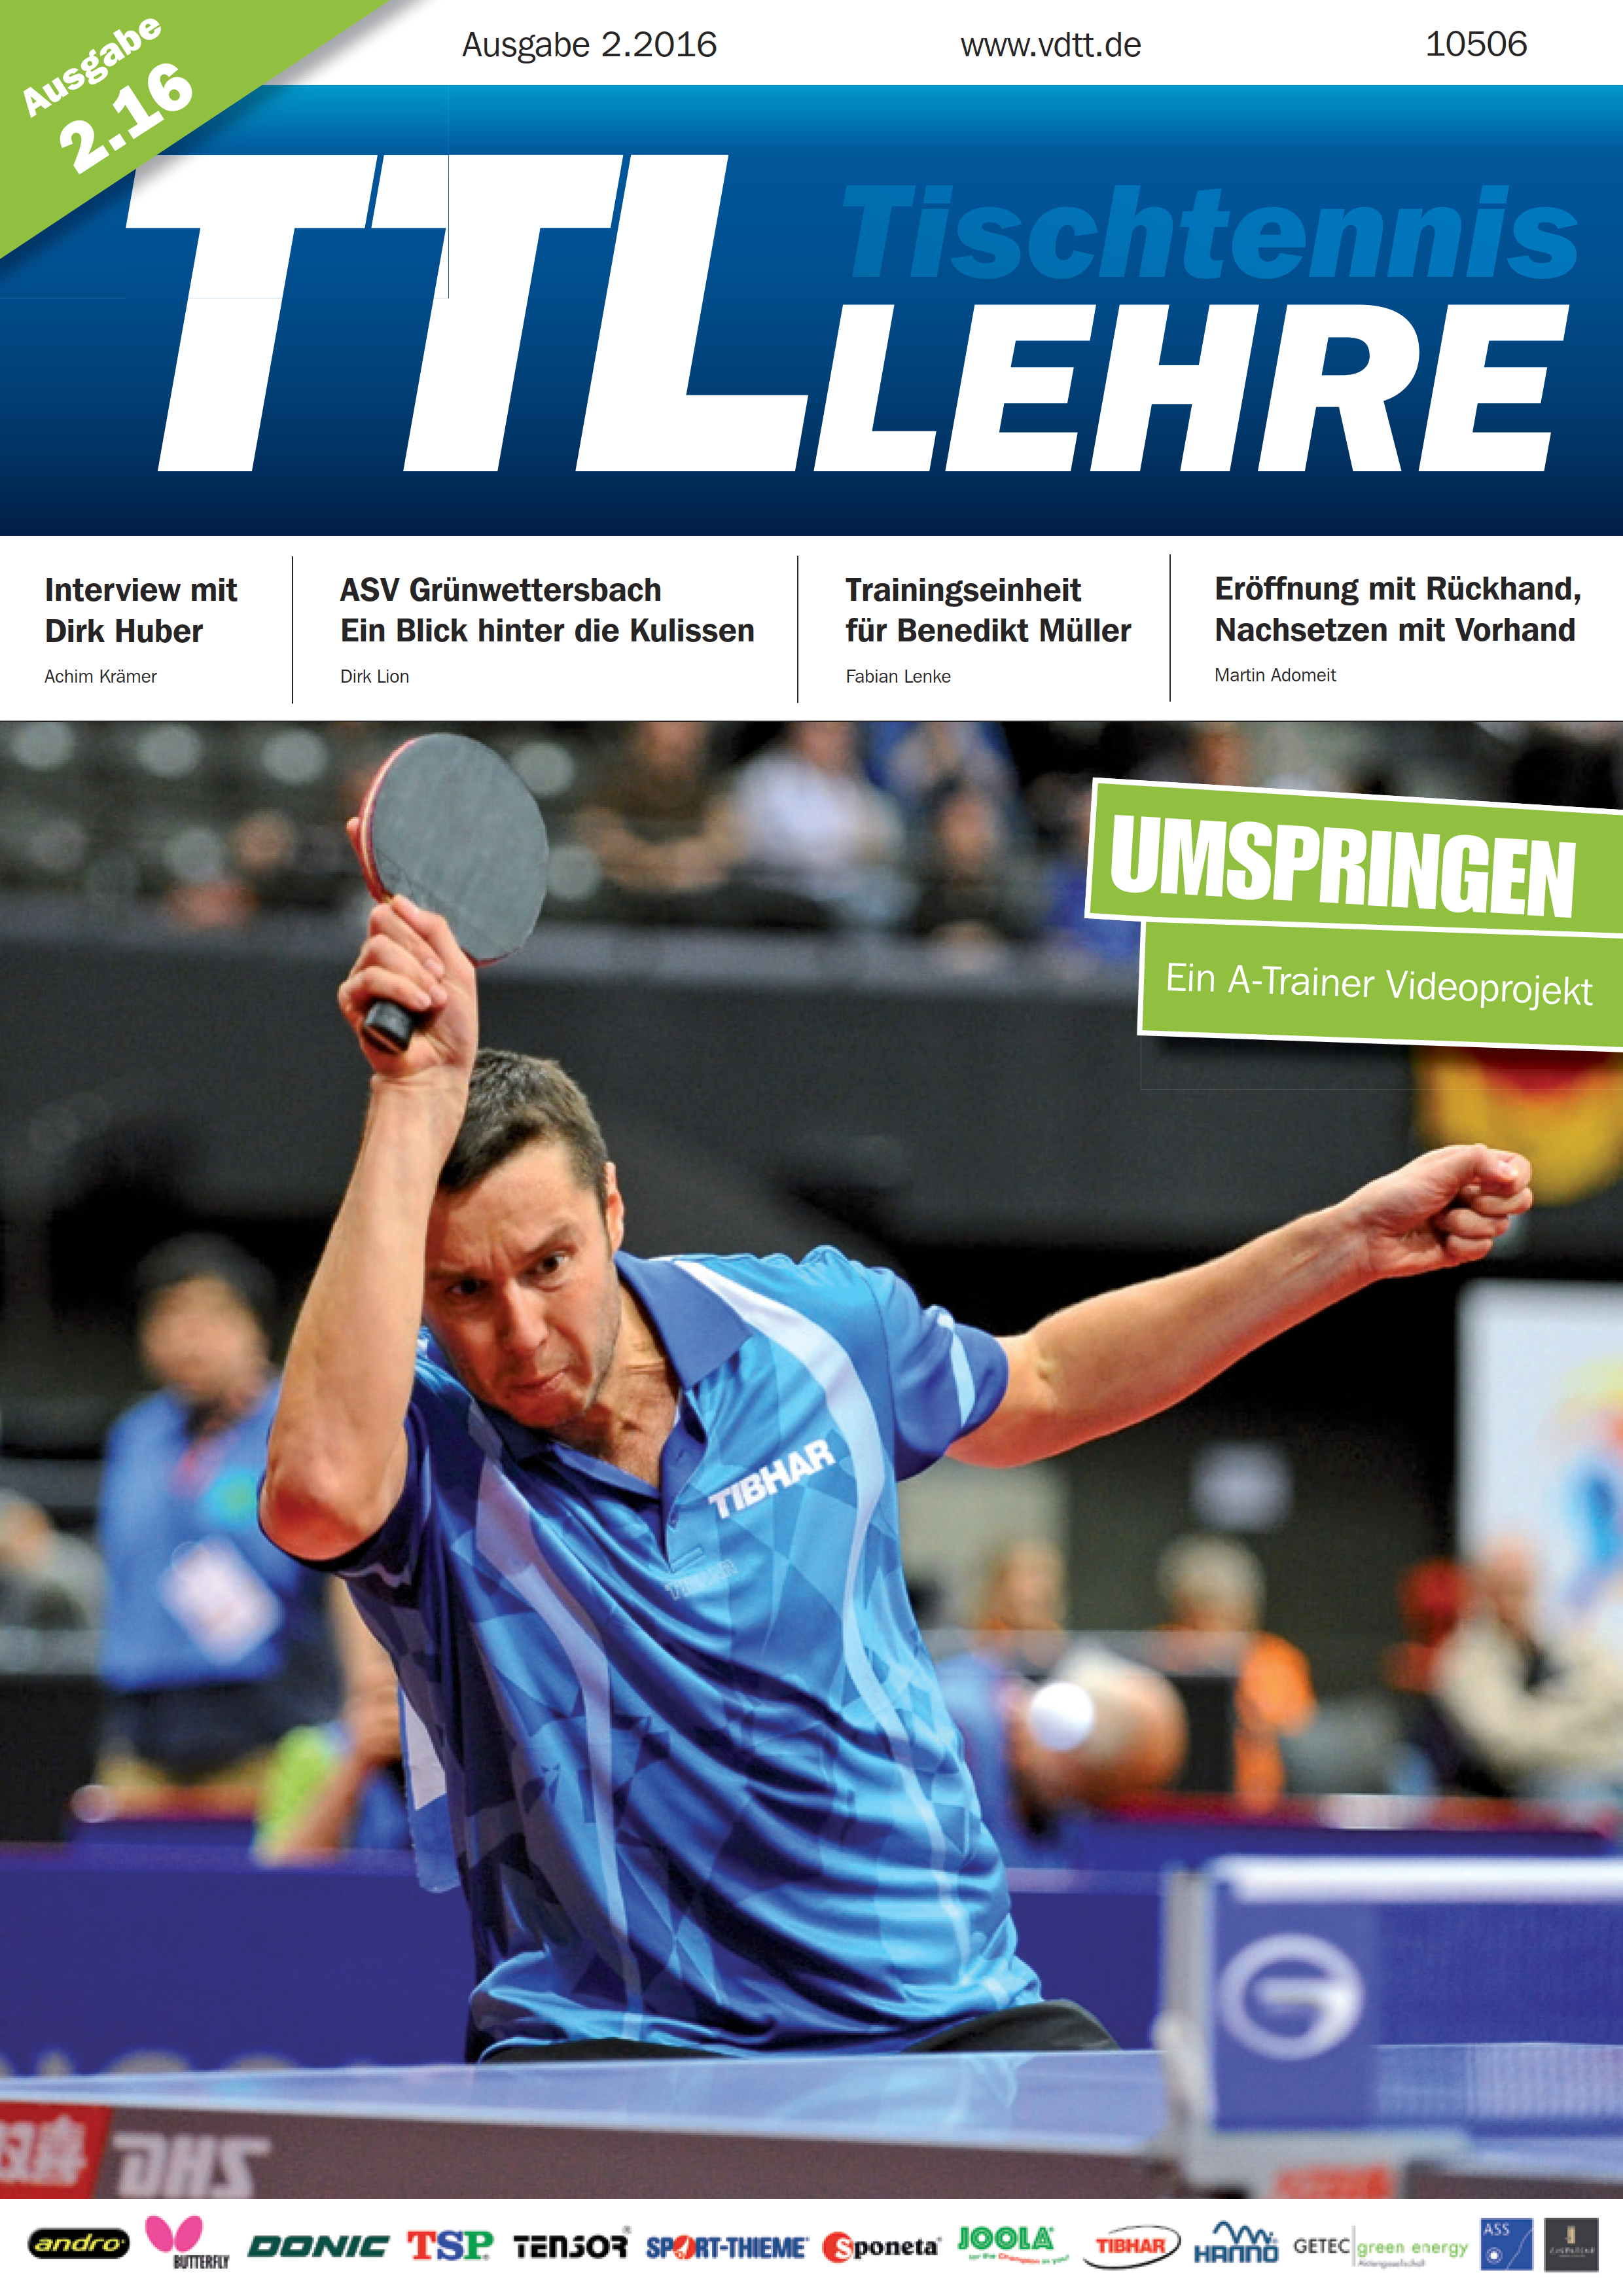 VDTT-Zeitschrift Tischtennislehre - Ausgabe: 2016-02